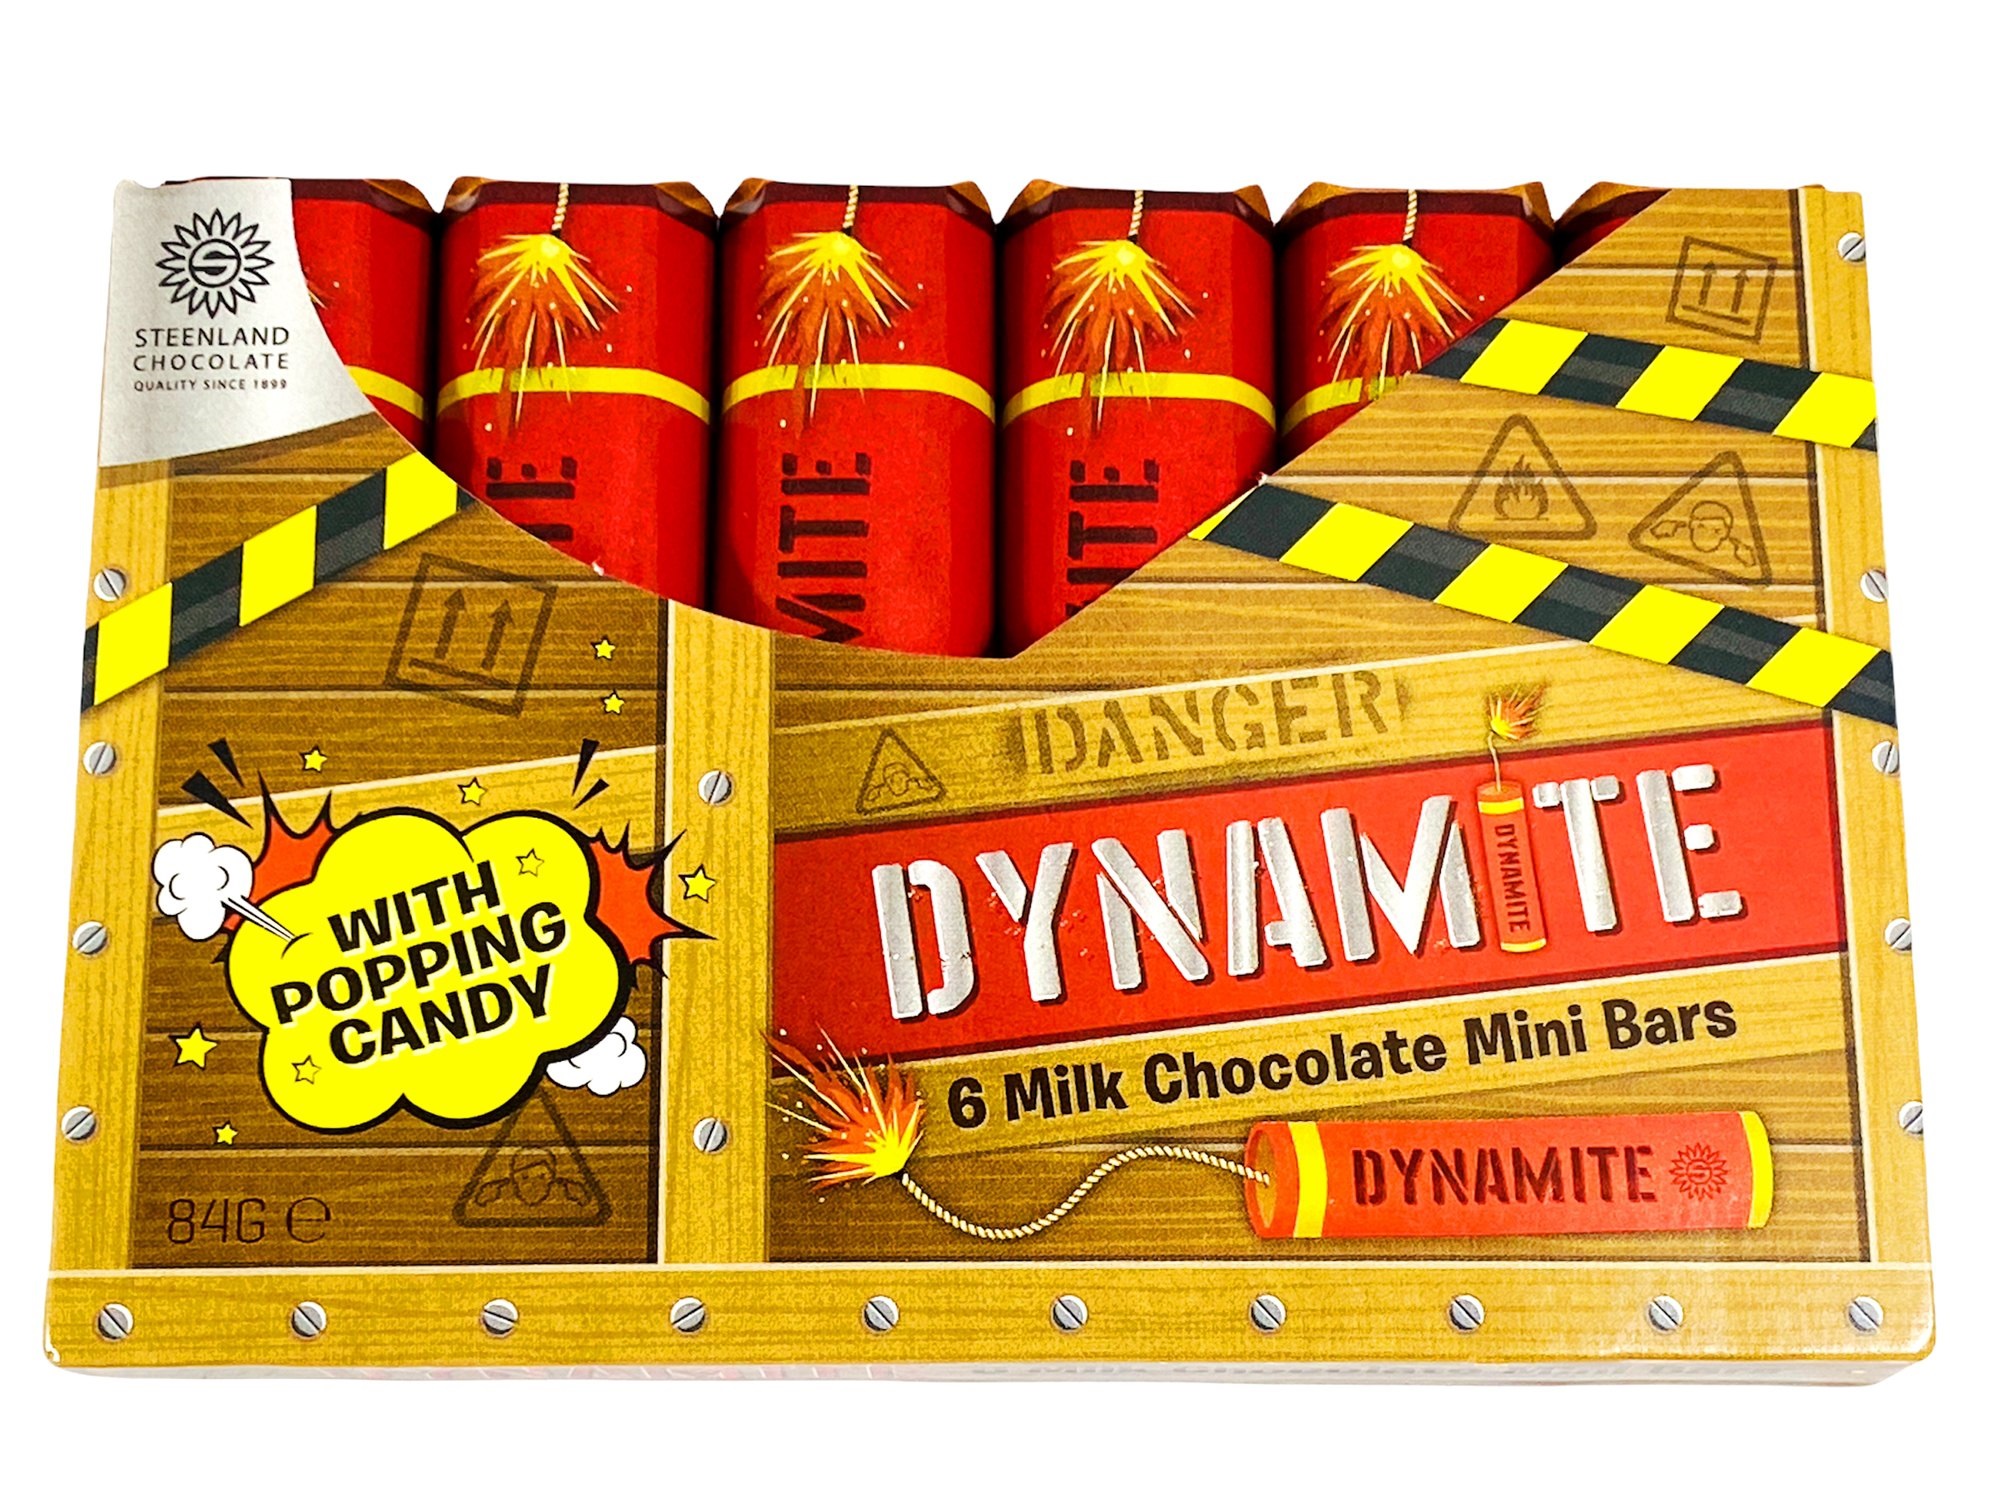 Dynamite 6 Milk Chocolate Mini Bars